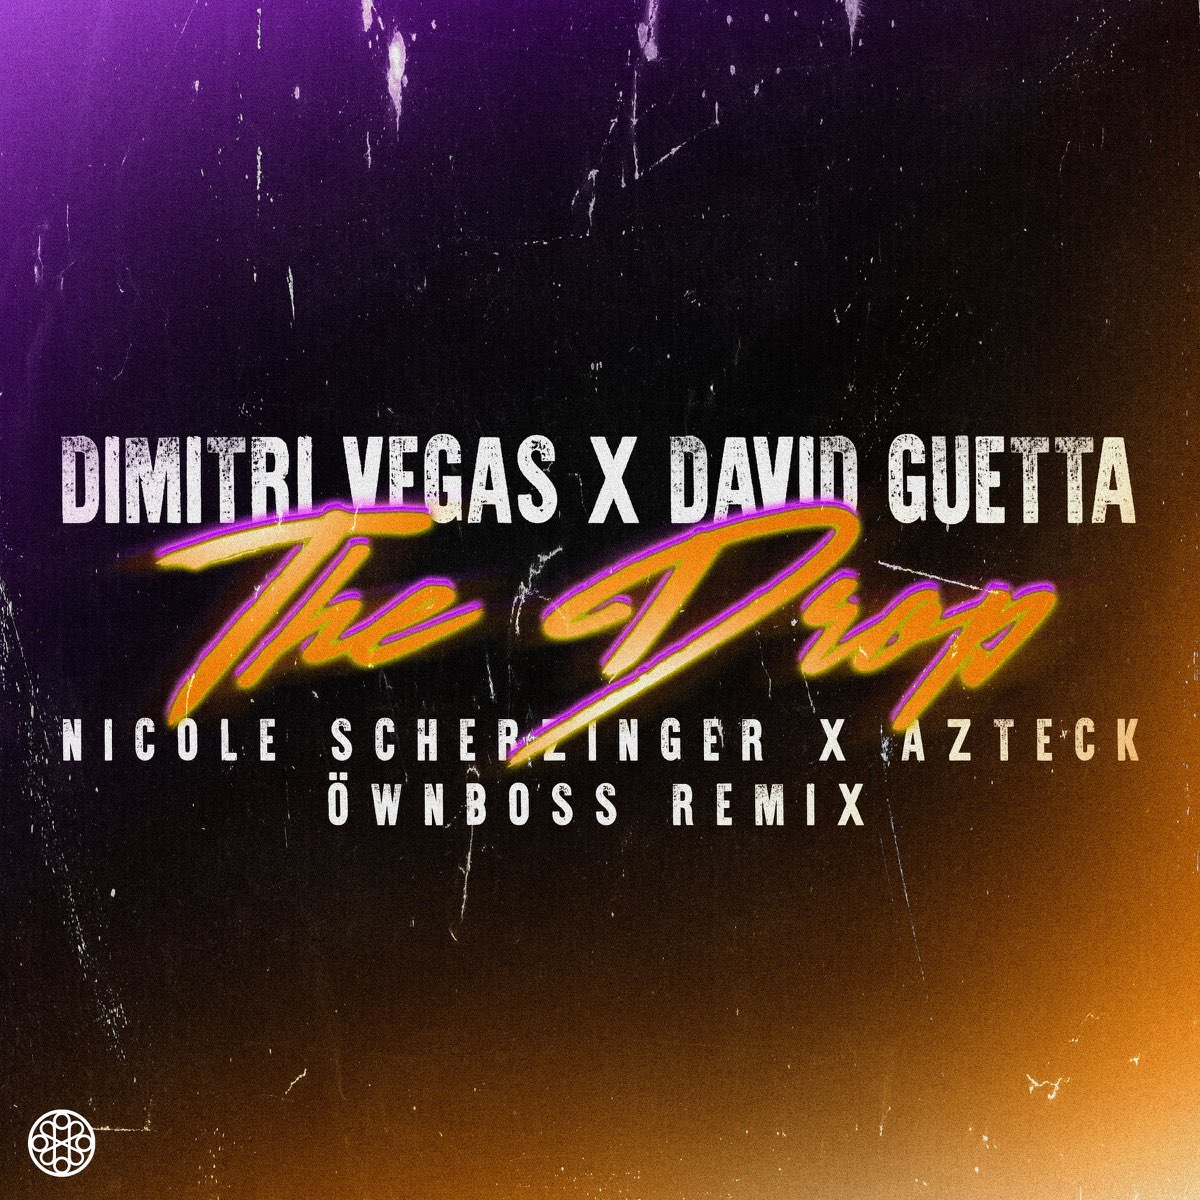 Dimitri Vegas, David Guetta, & Nicole Scherzinger ft. featuring Azteck The Drop (Öwnboss Remix) cover artwork